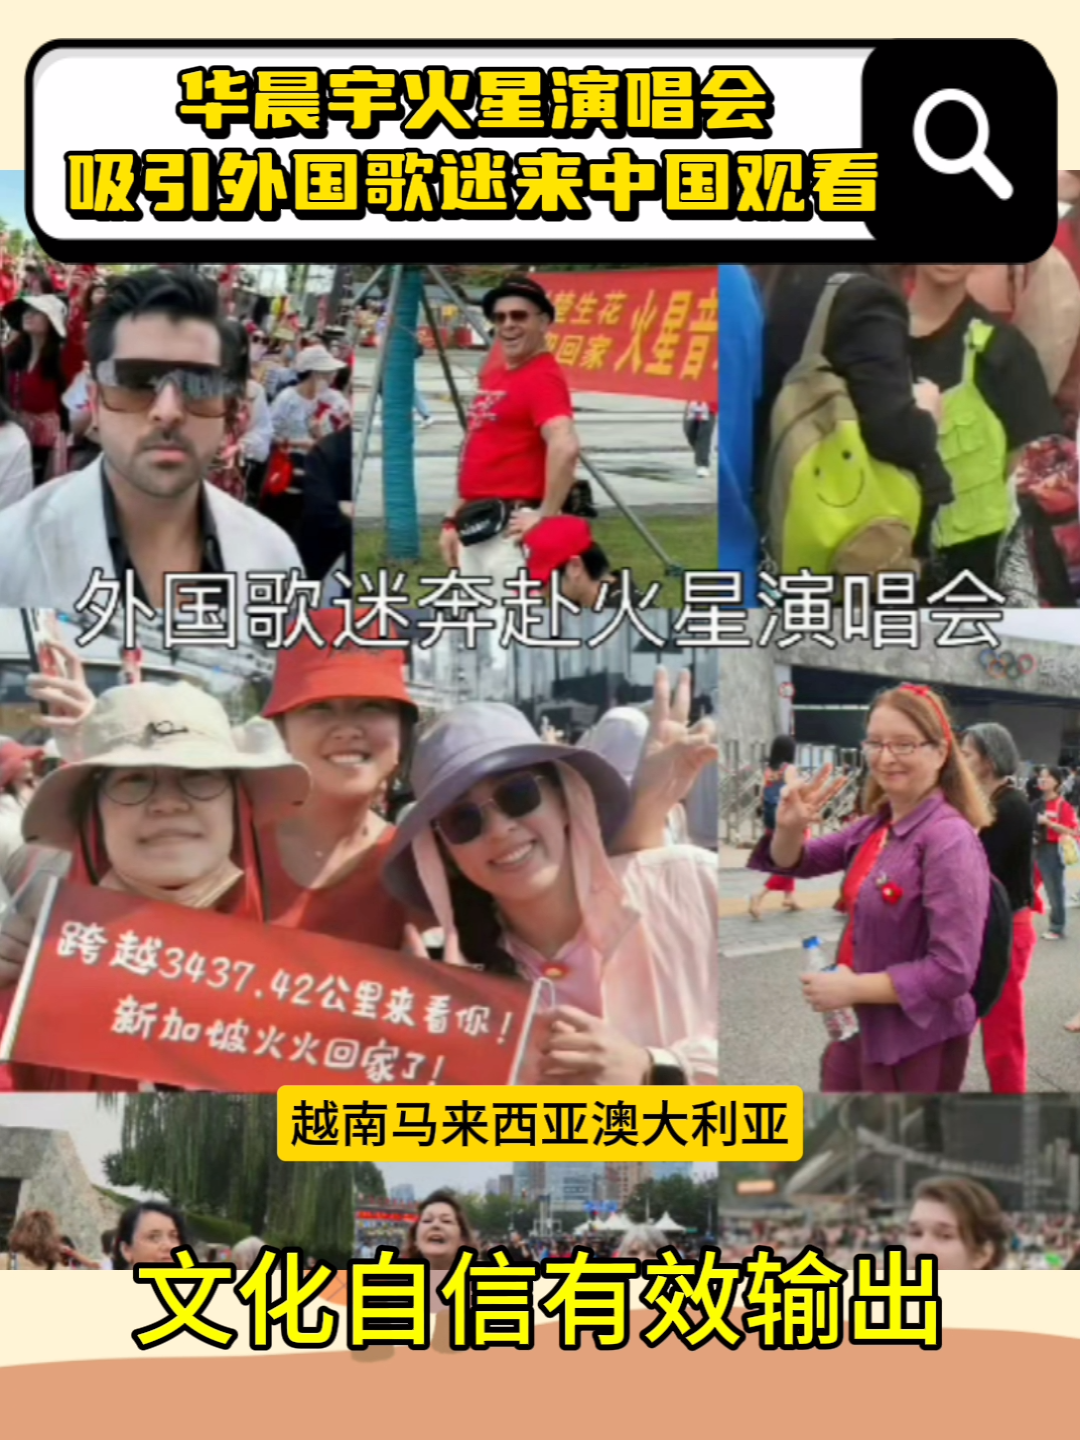 华晨宇火星演唱会吸引大批外国人来中国观看，文化自信有效输出